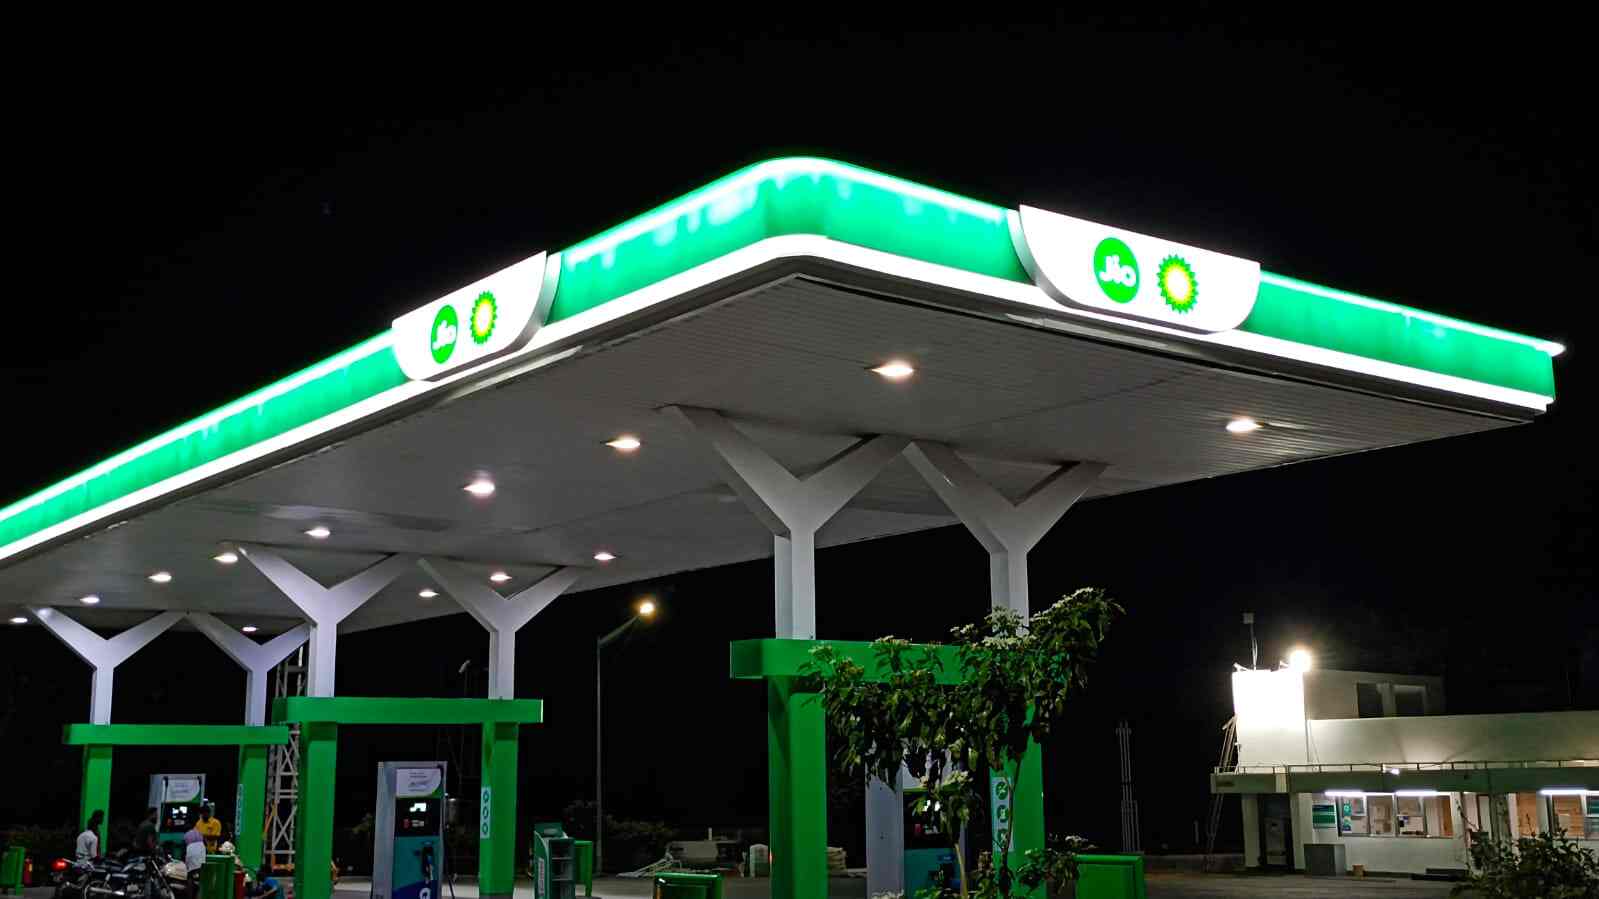 Reliance-bp, Nayara price petrol, diesel at market rates | World Auto Forum